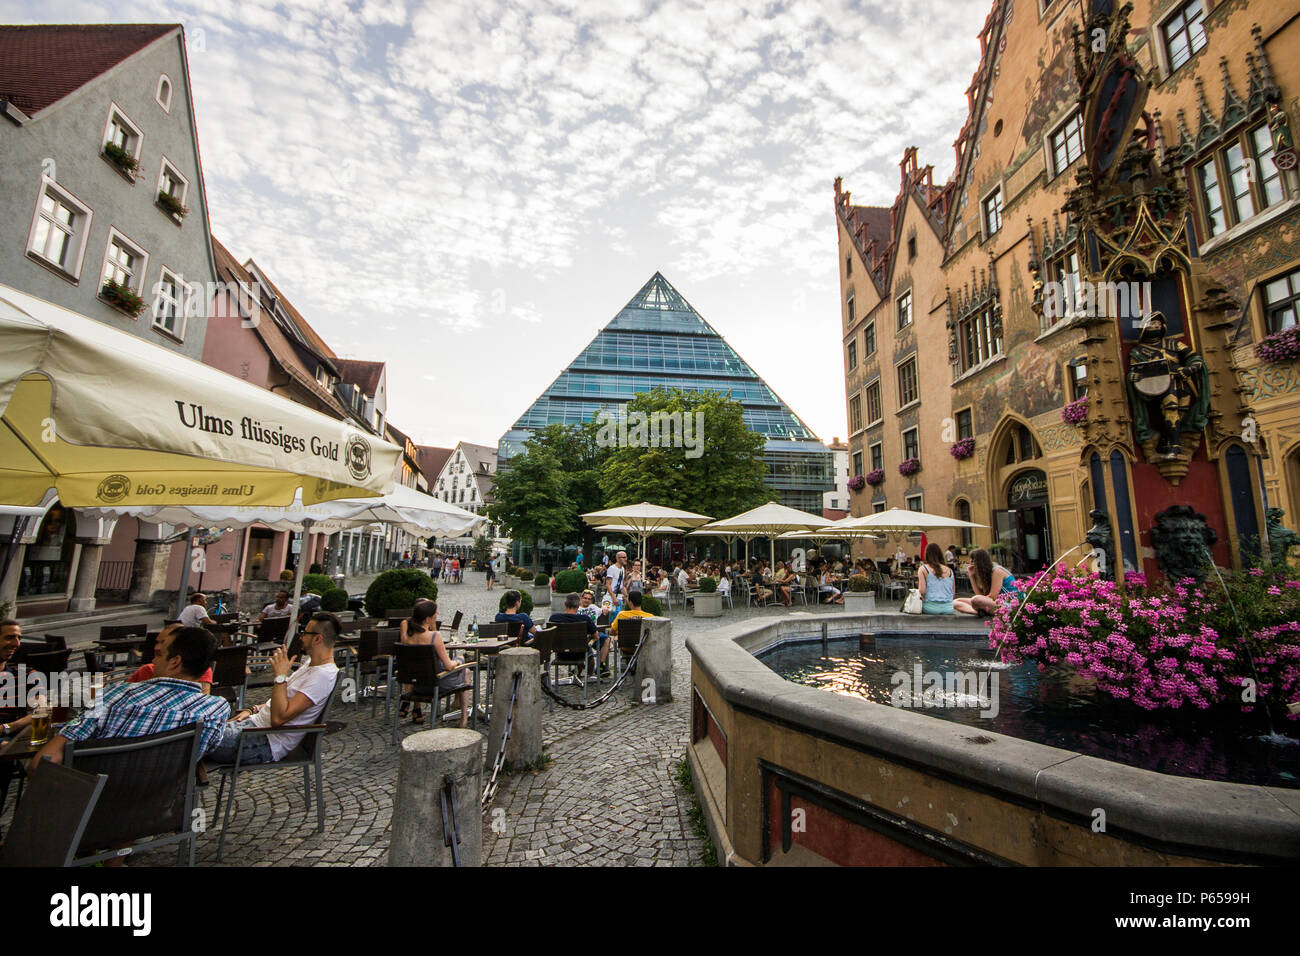 Ulm, Germania. Viste di Ulm Marktplatz (piazza del mercato) con il Rathaus (municipio, a destra) e Stadtbibliothek (biblioteca pubblica, al centro) Foto Stock